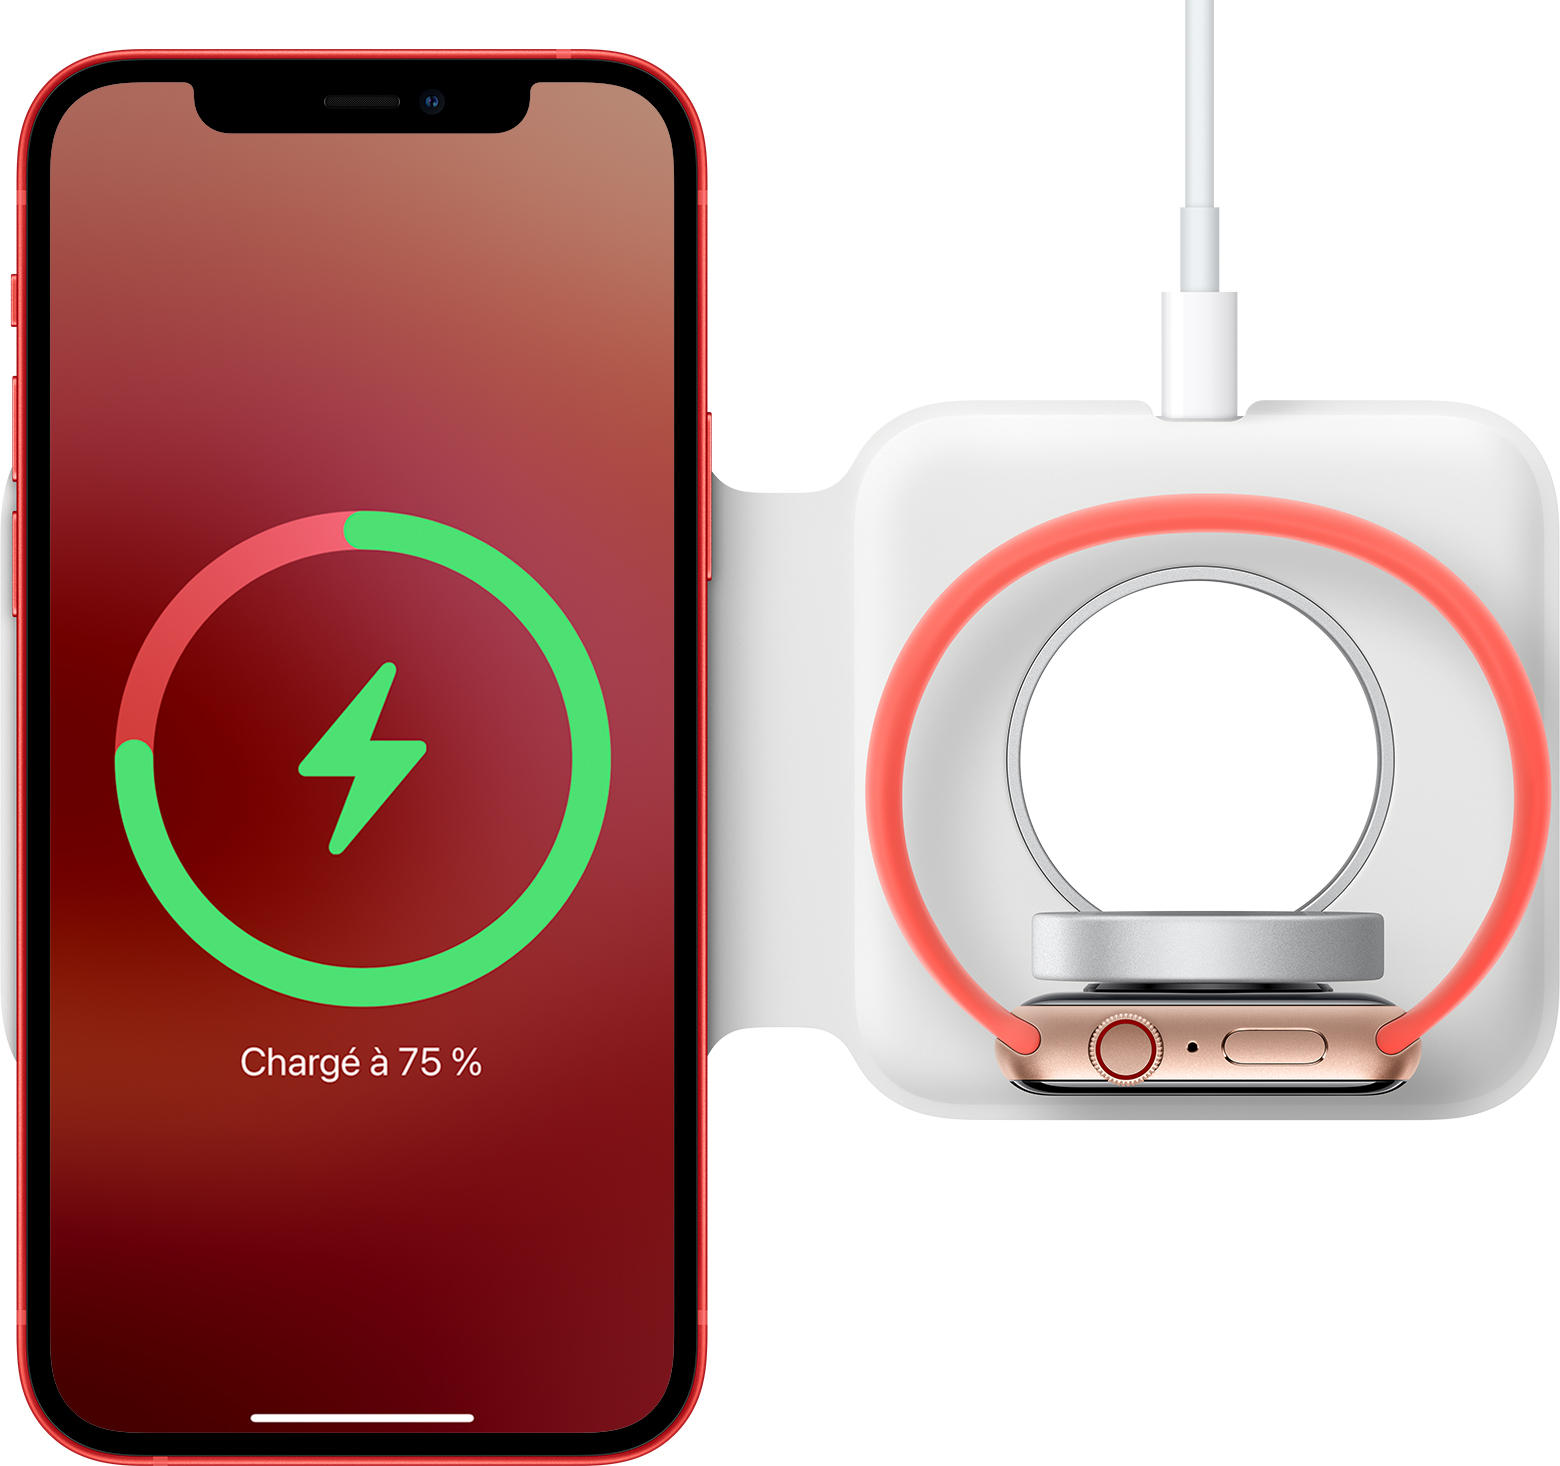 iPhone 12 : le chargeur MagSafe permet une recharge sans fil 2x